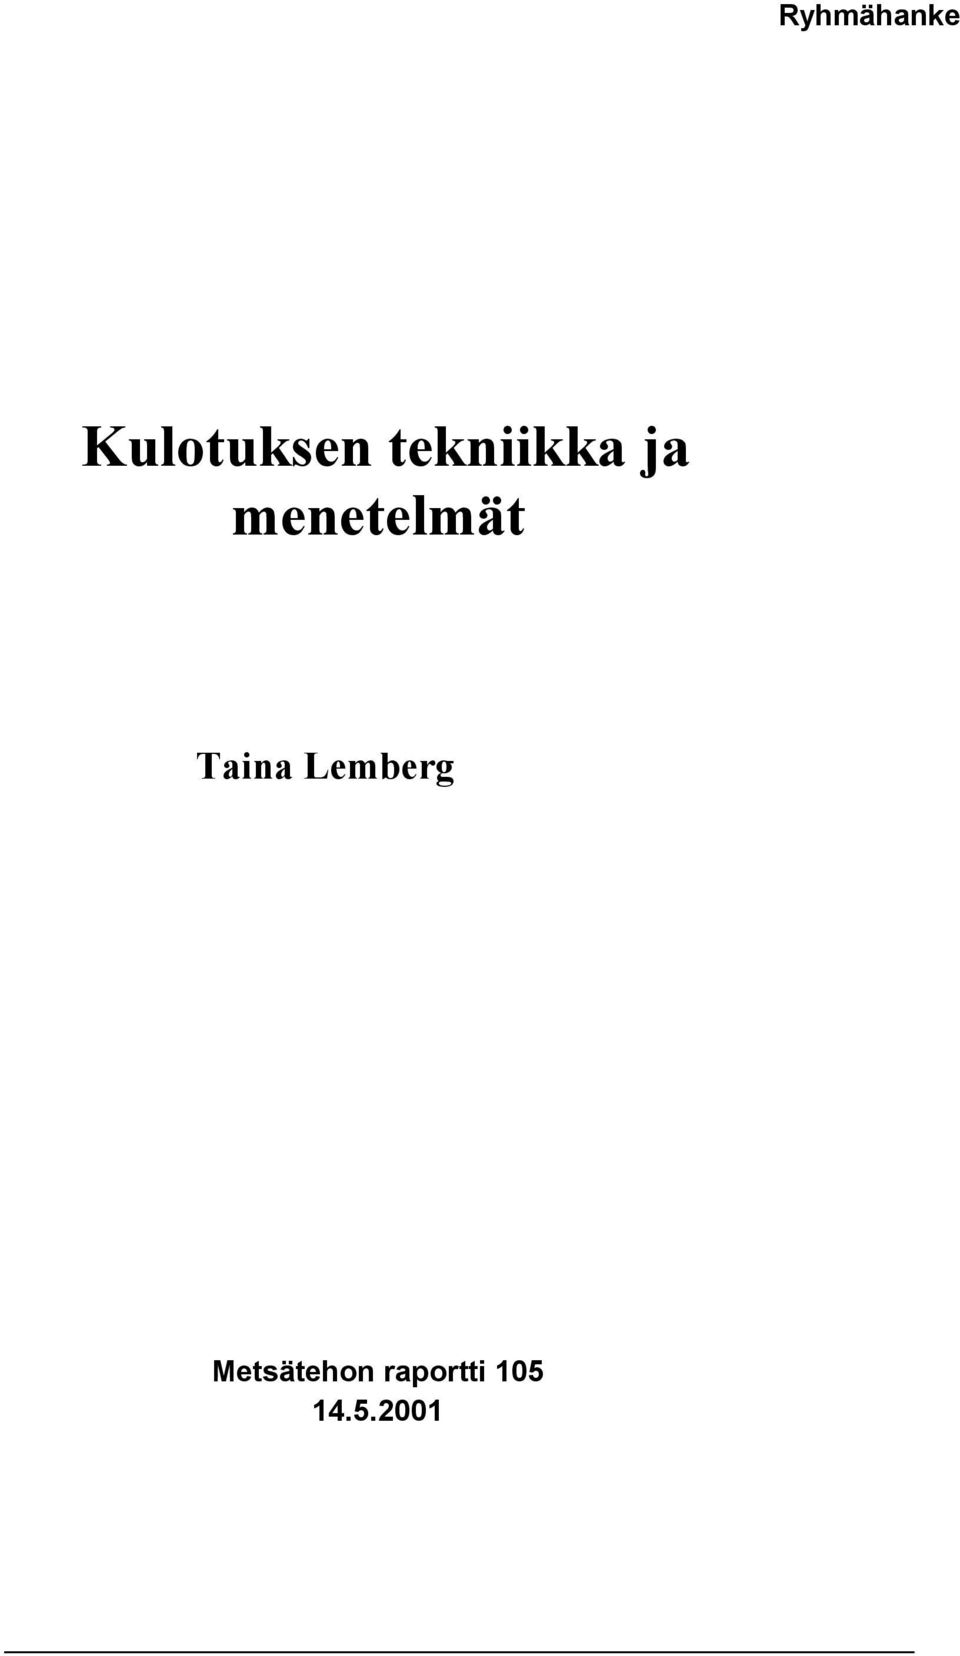 Taina Lemberg